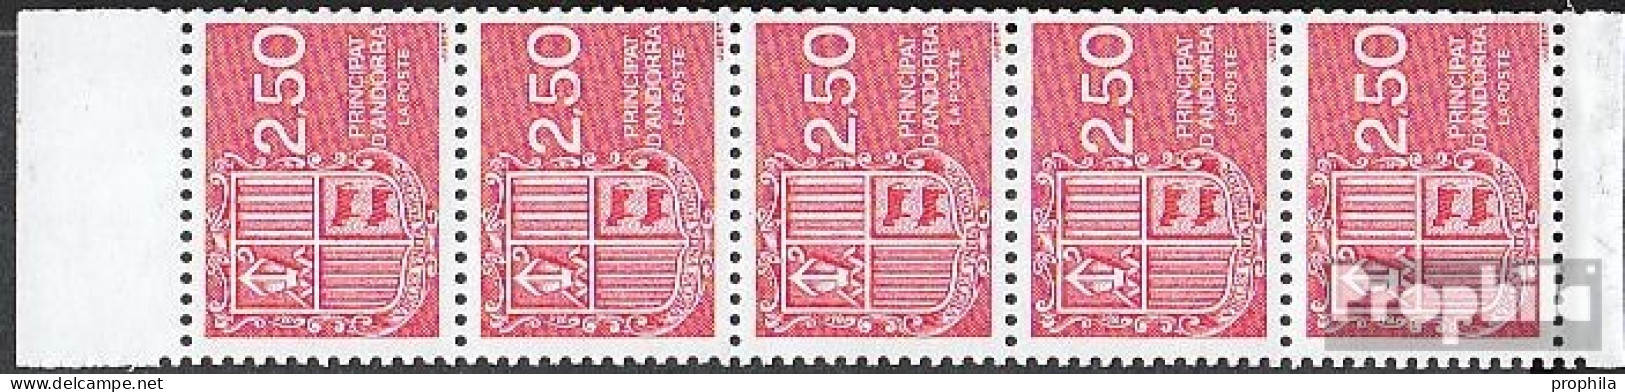 Andorra - Französische Post Hbl4 Postfrisch 1991 Freimarken: Wappen - Postzegelboekjes